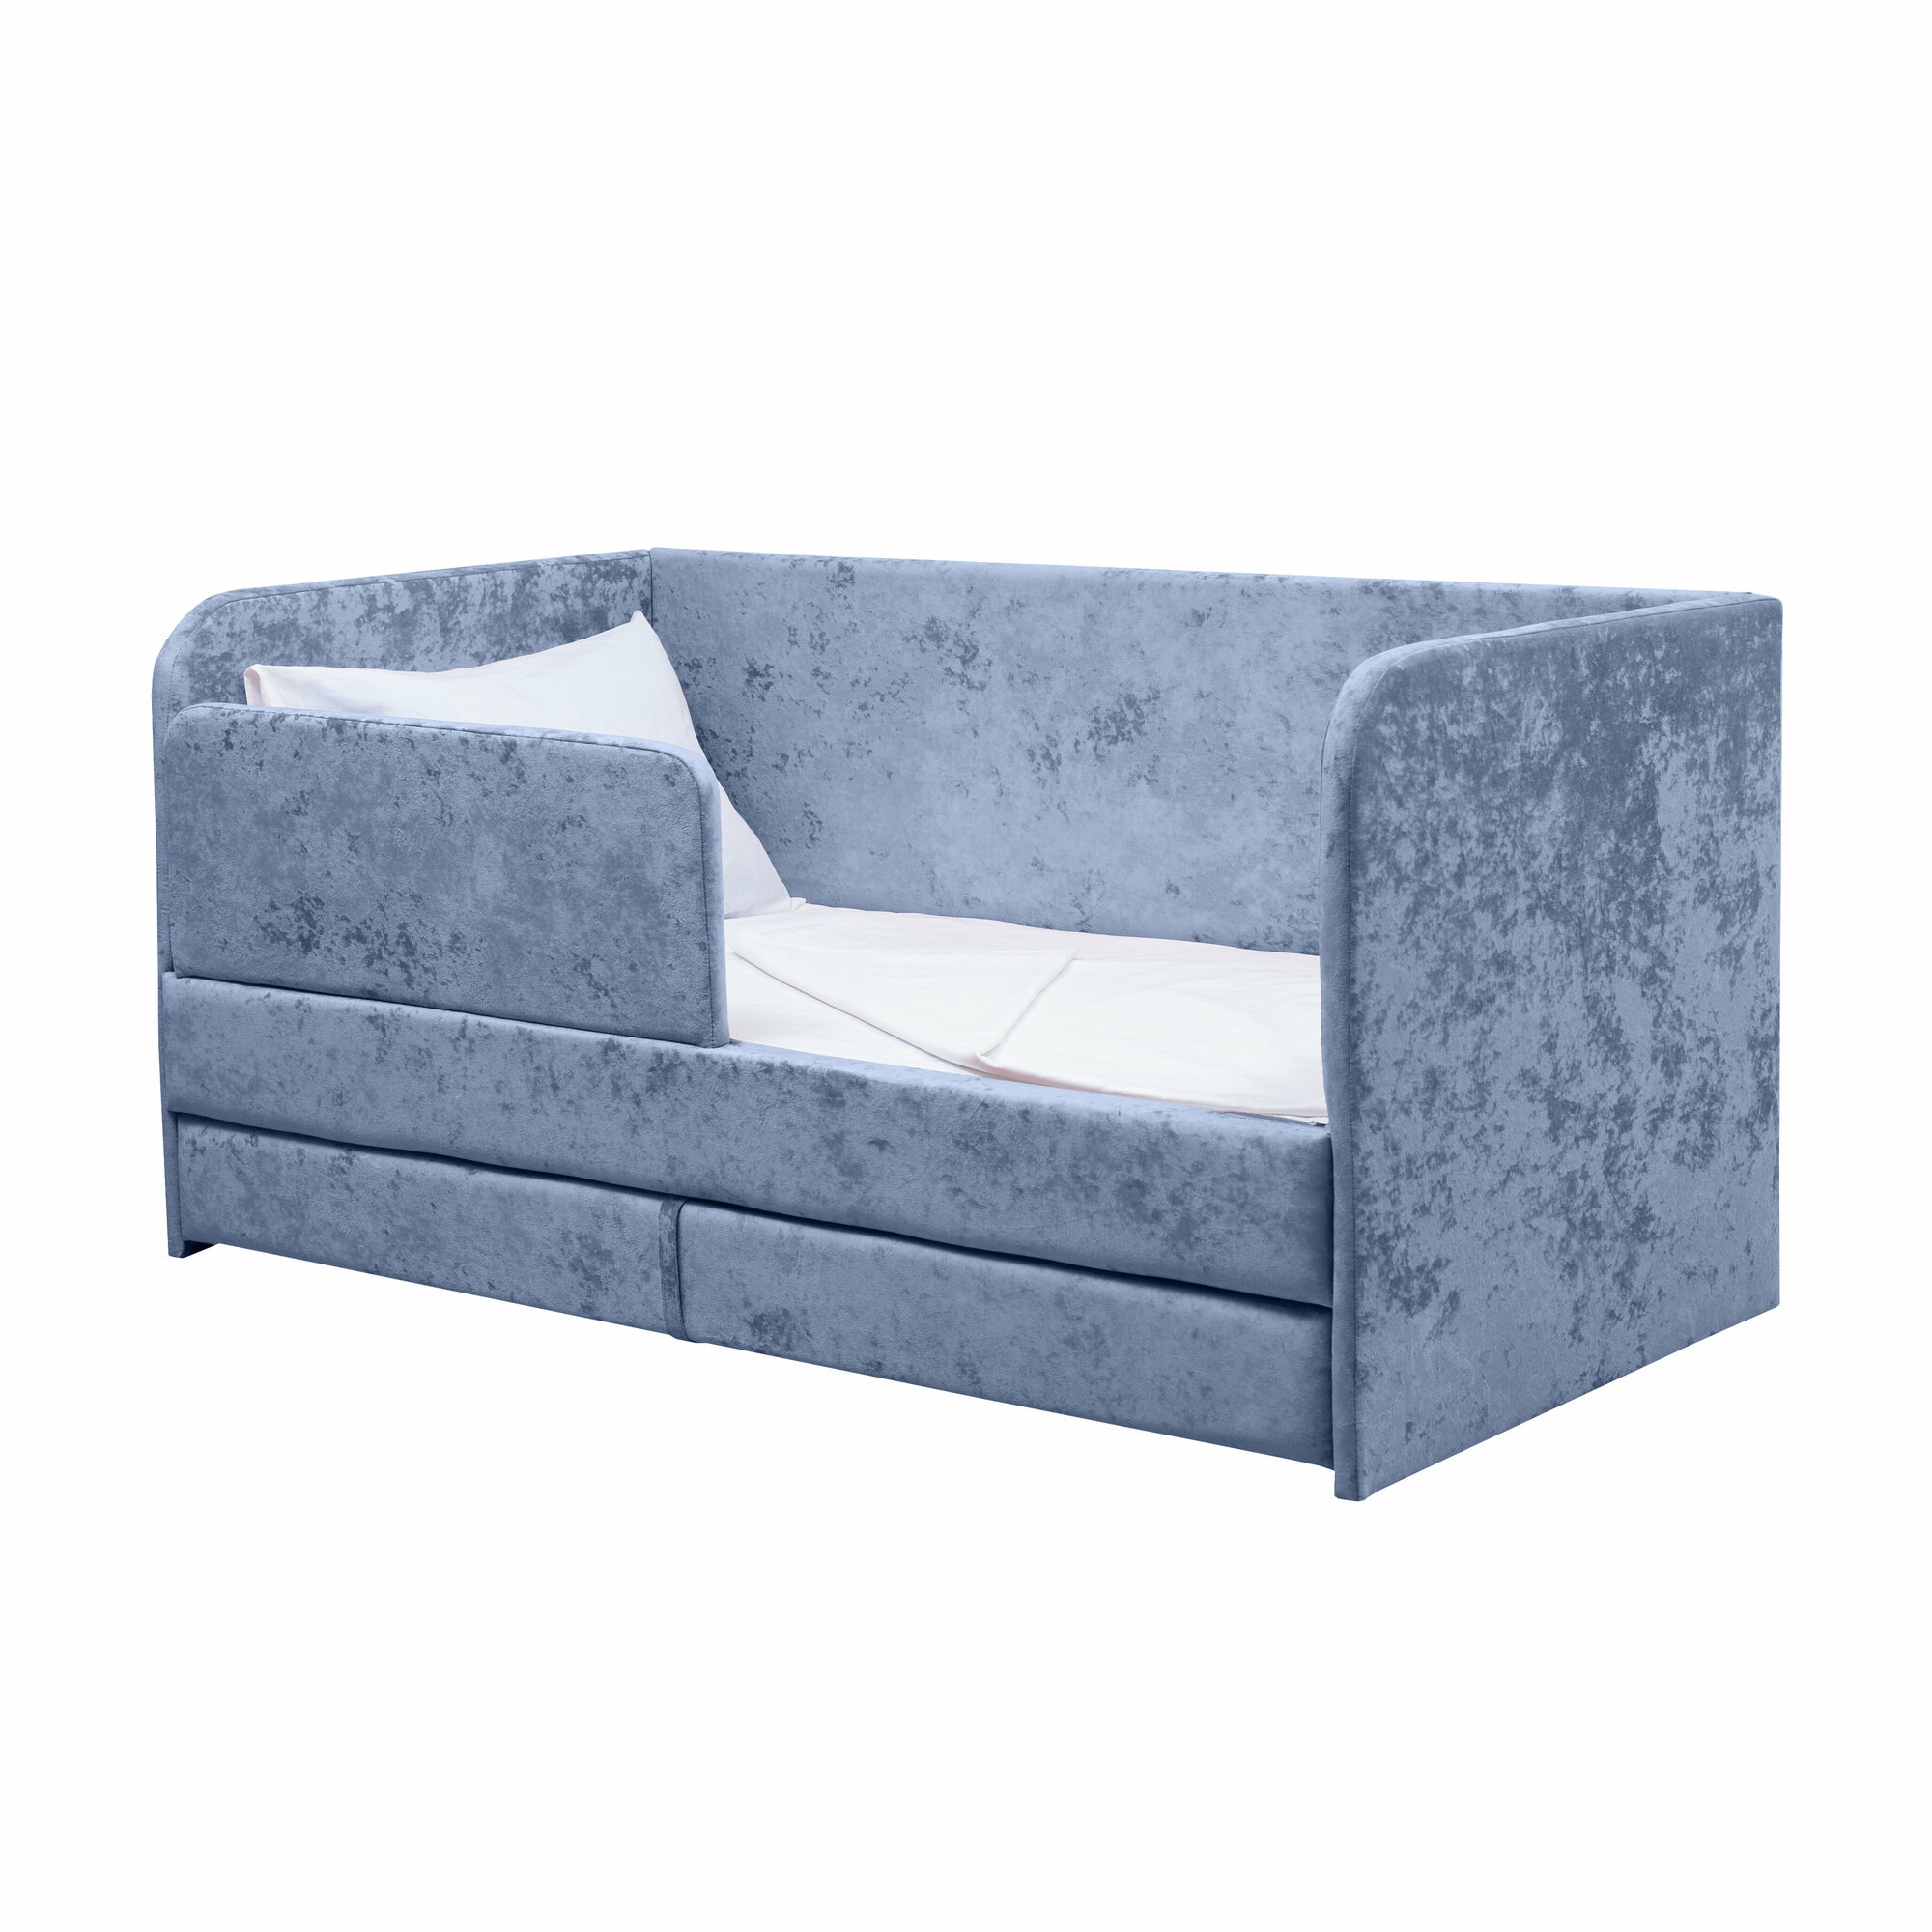 Кровать-диван Непоседа 160*80 голубой с дополнительным спальным местом+матрас